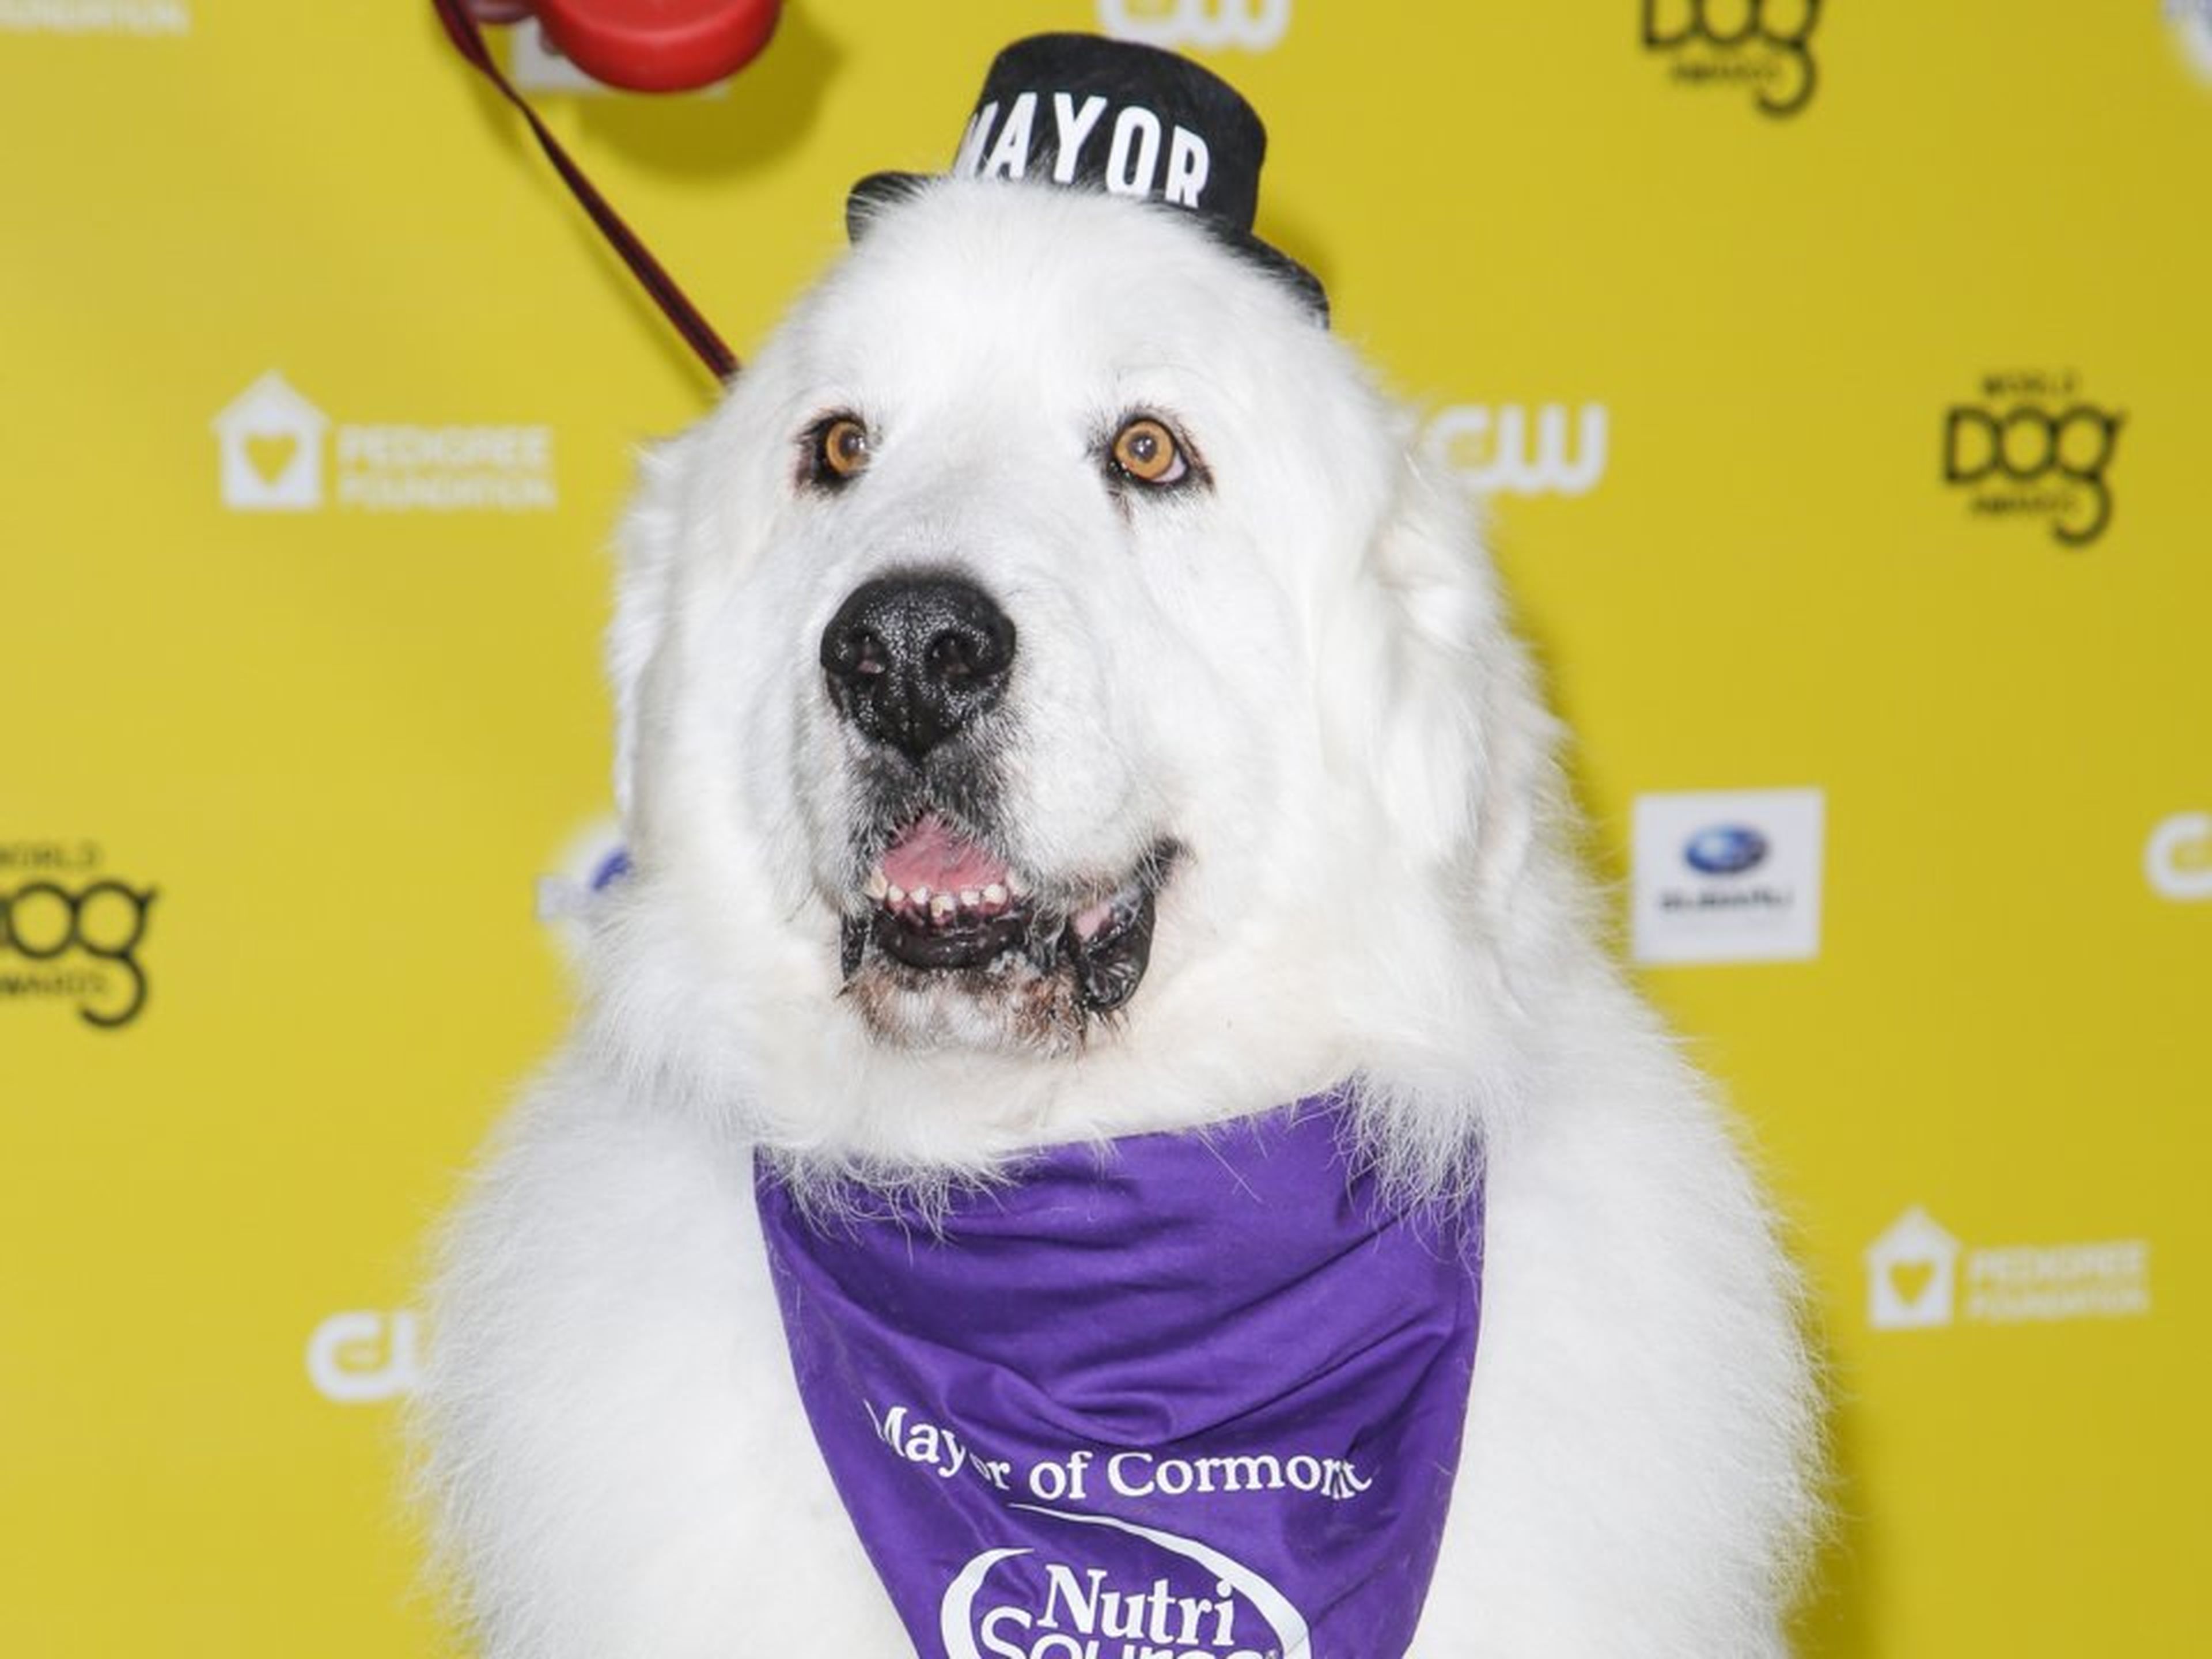 El alcalde Duke, en su llegada al certamen World Dog Awards en enero de 2015.